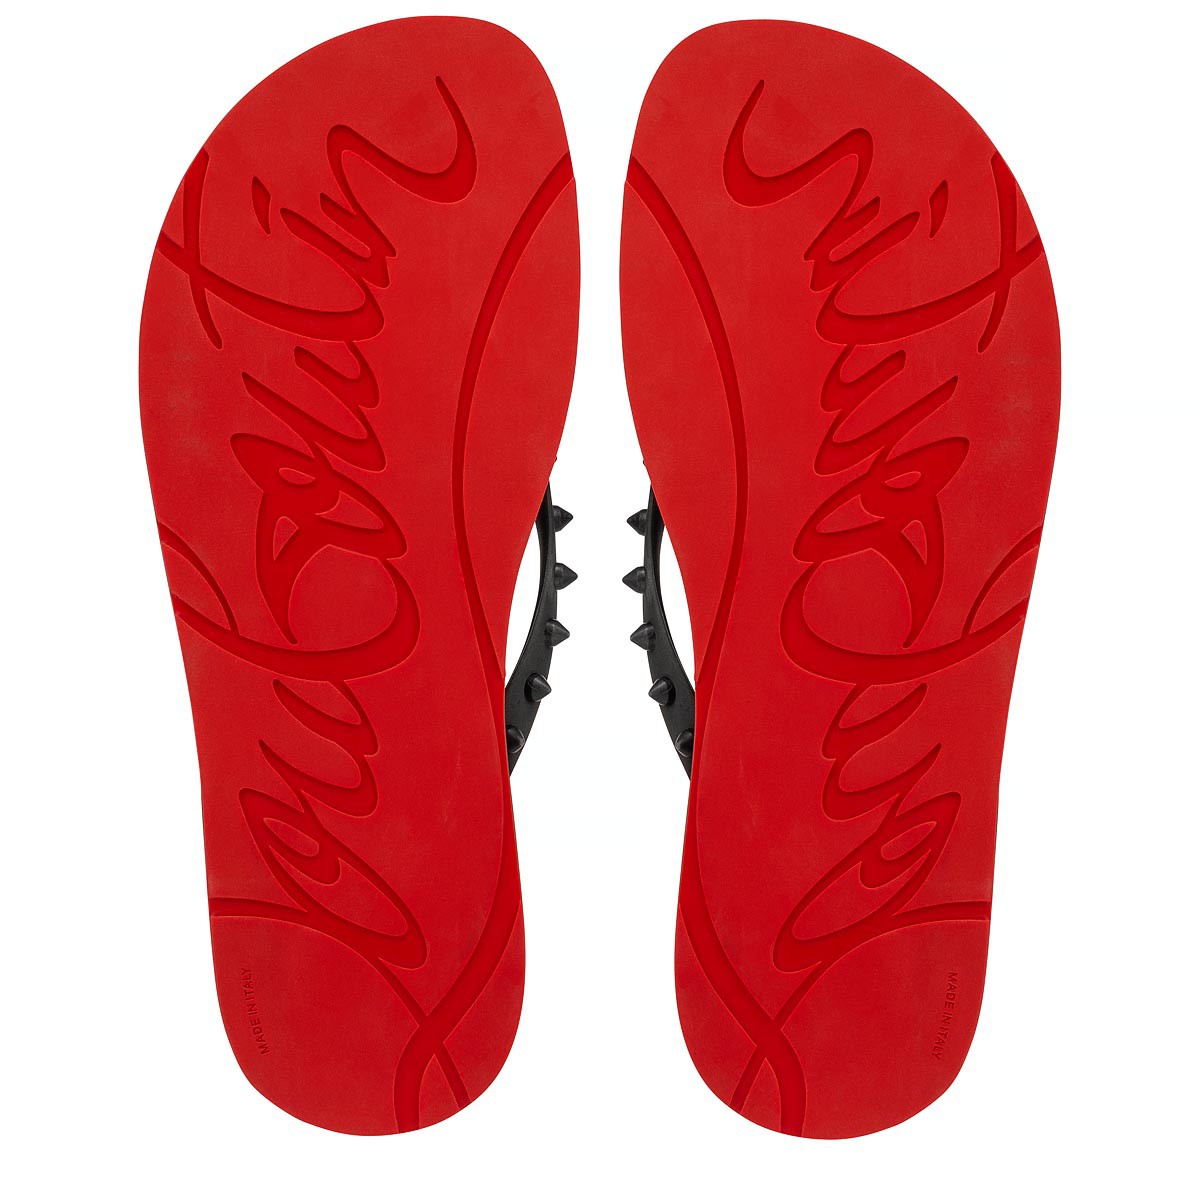 Christian Louboutin Loubi flip flops for Men - Red in KSA